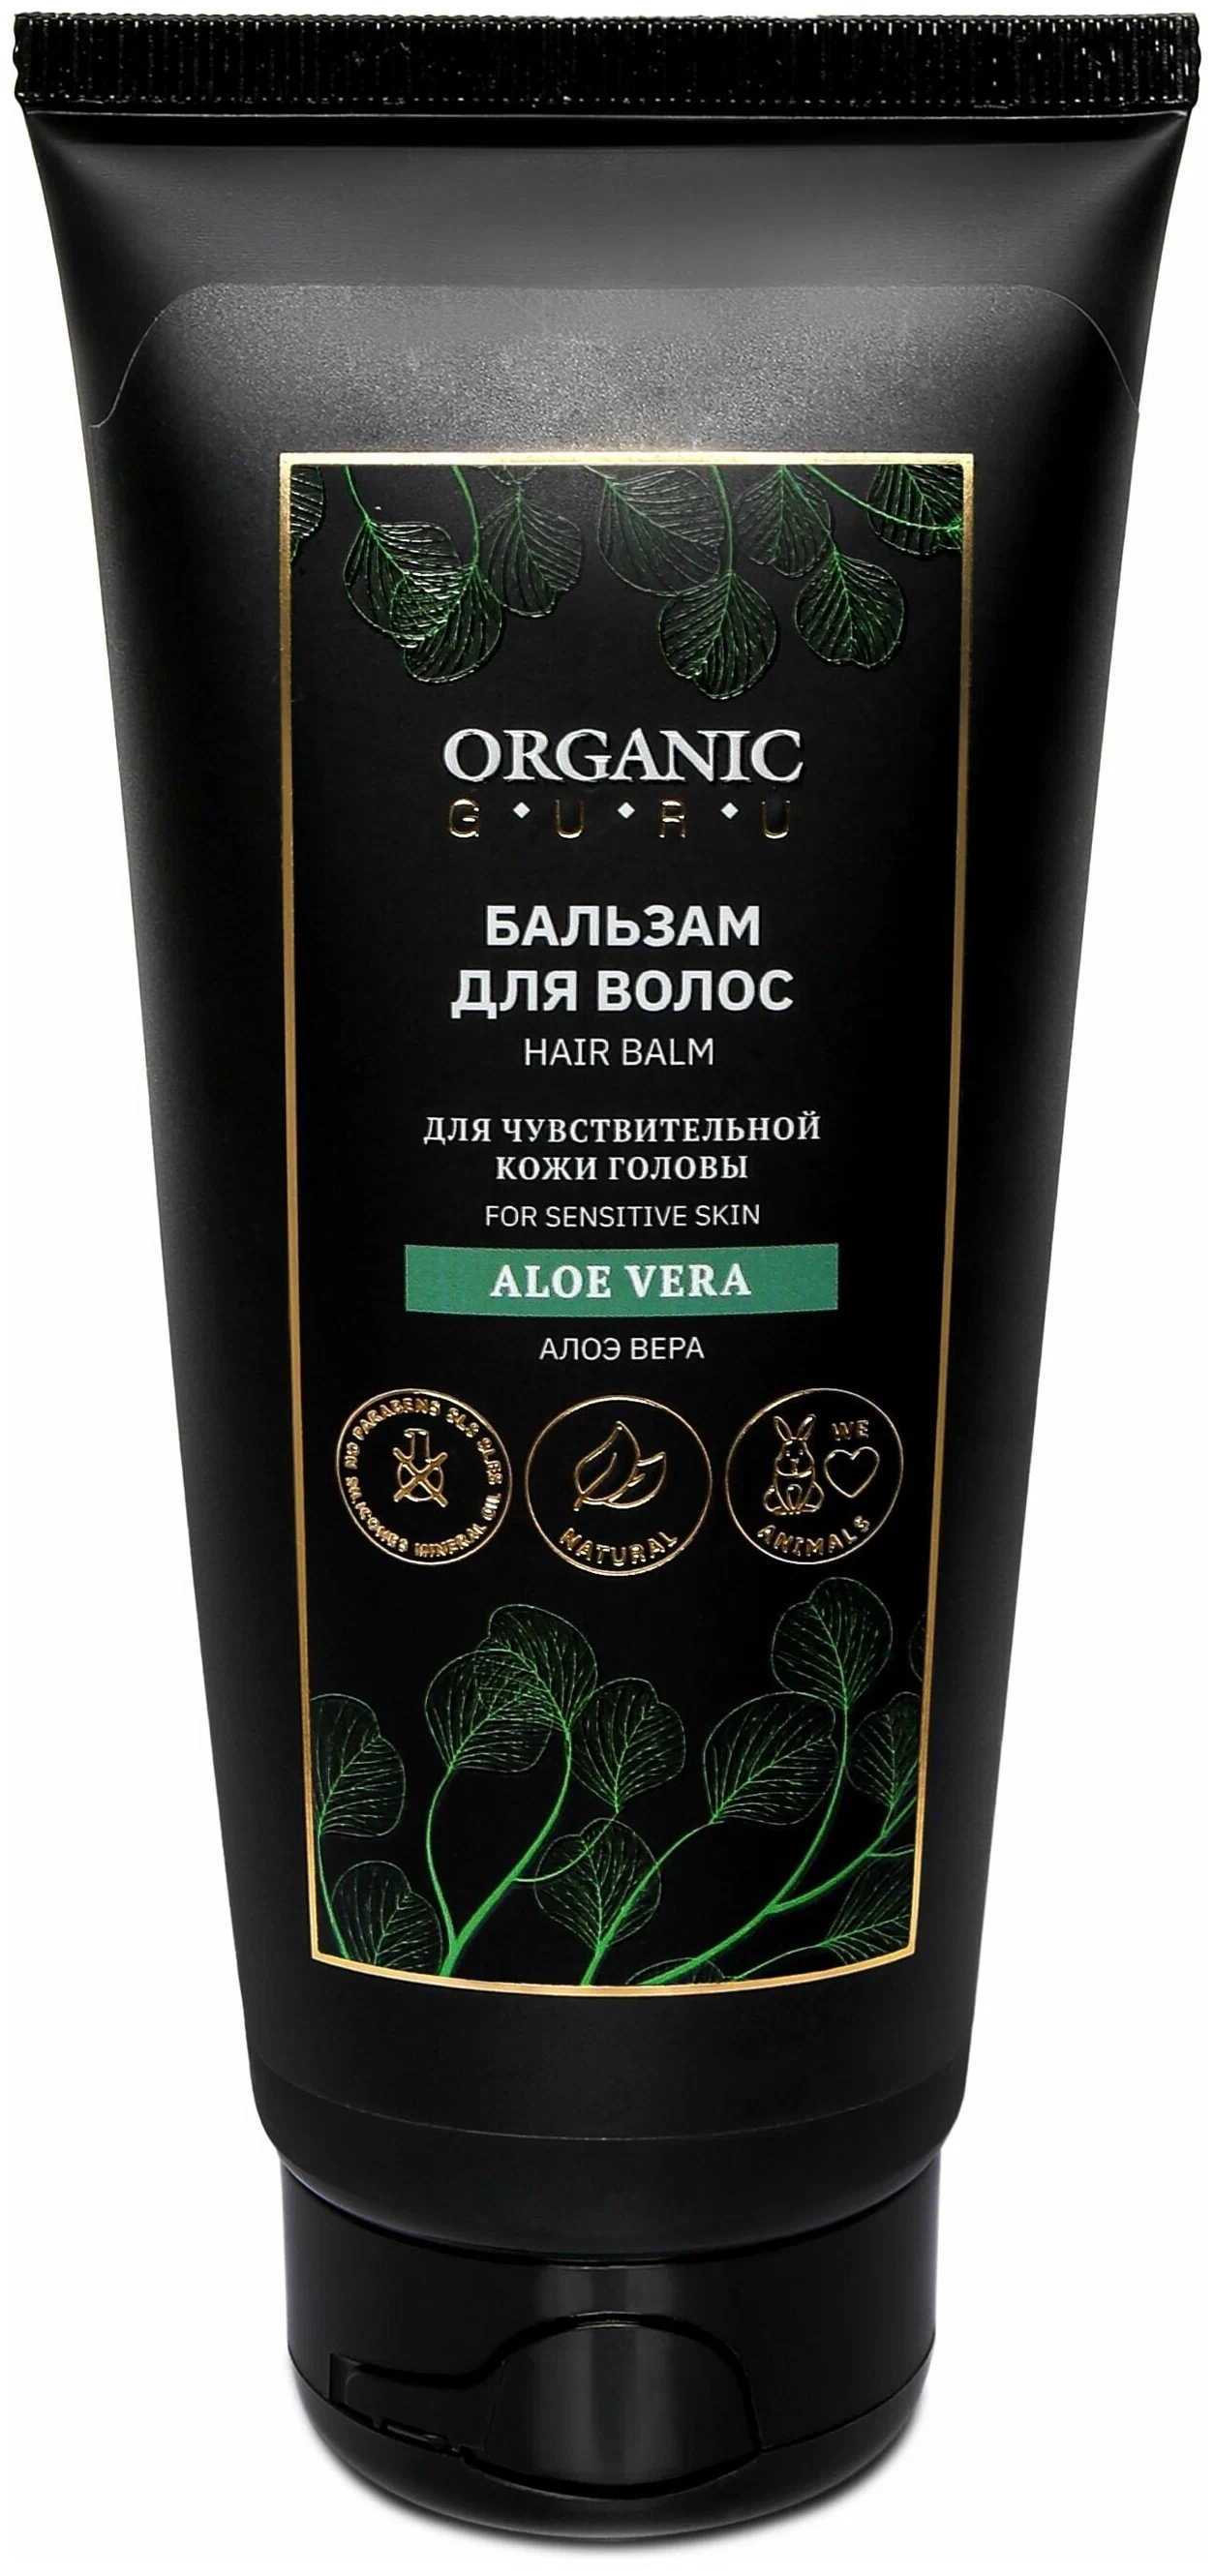 Бальзам-ополаскиватель для волос Organic Guru Aloe Vera для чувствительной кожи, 200 мл бизорюк взбитое масло ши против растяжек кожи с маслом жожоба 51